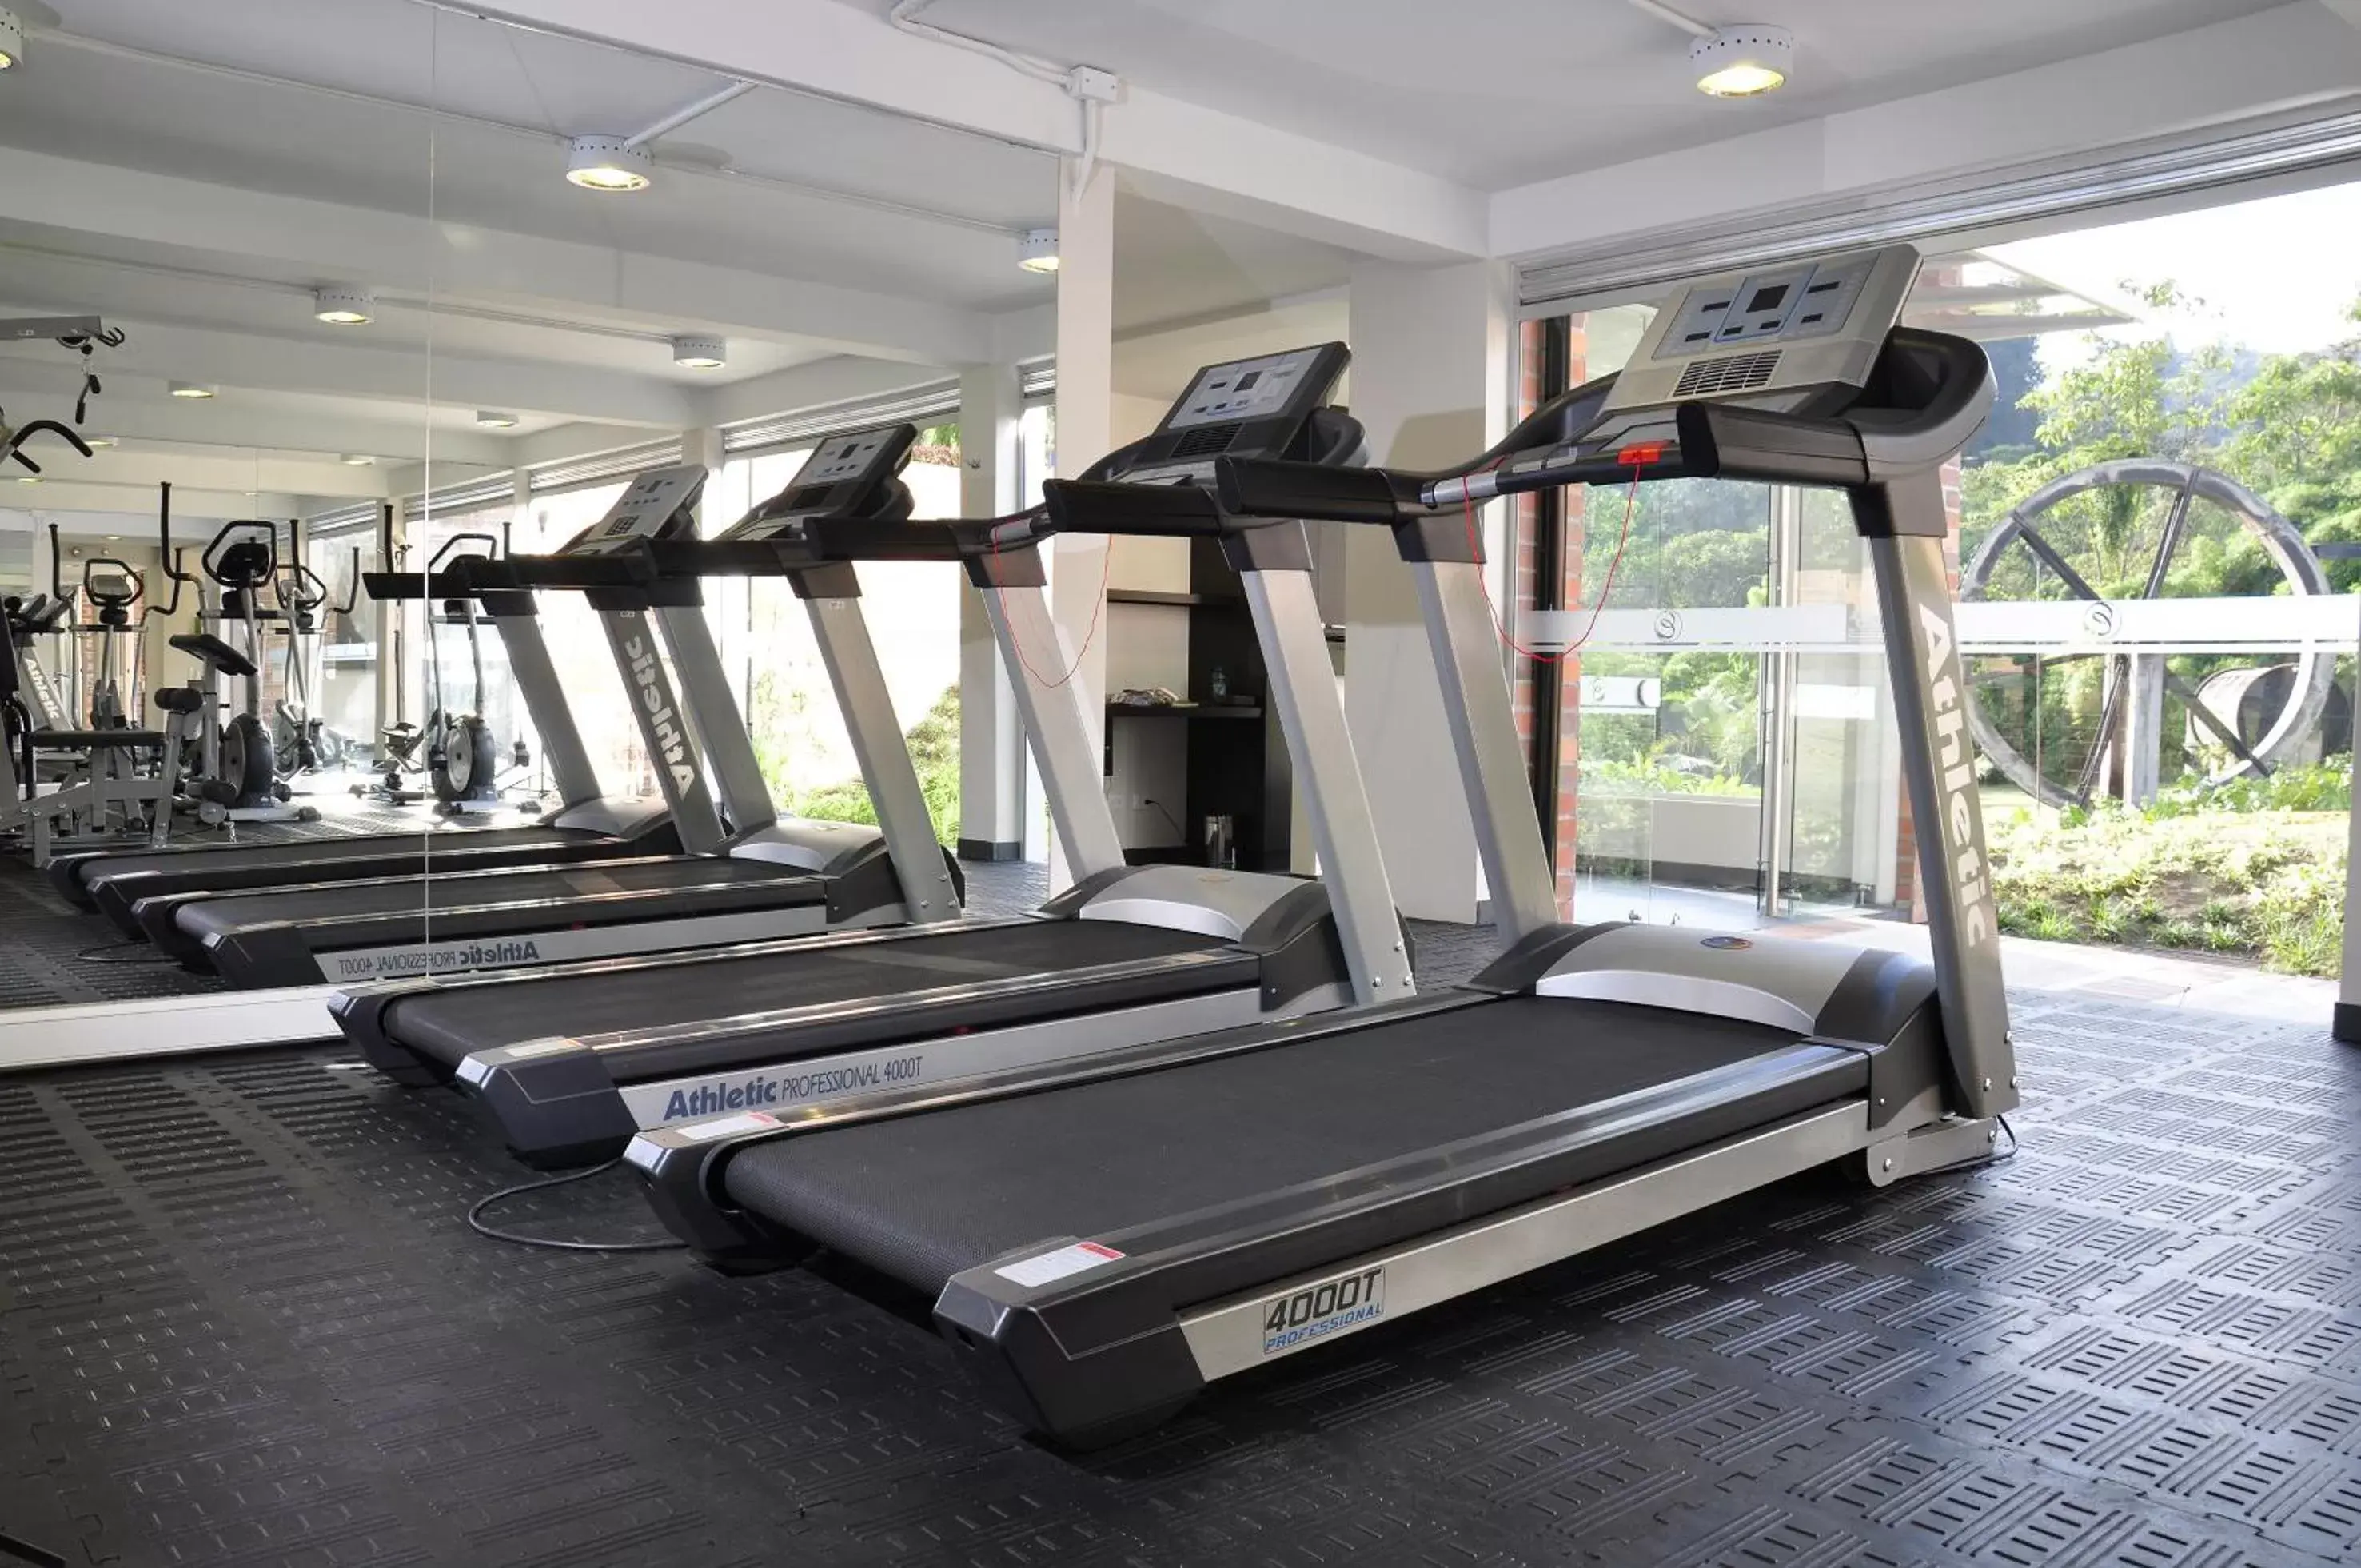 Fitness centre/facilities, Fitness Center/Facilities in Estelar Recinto Del Pensamiento Hotel Y Centro De Convenciones